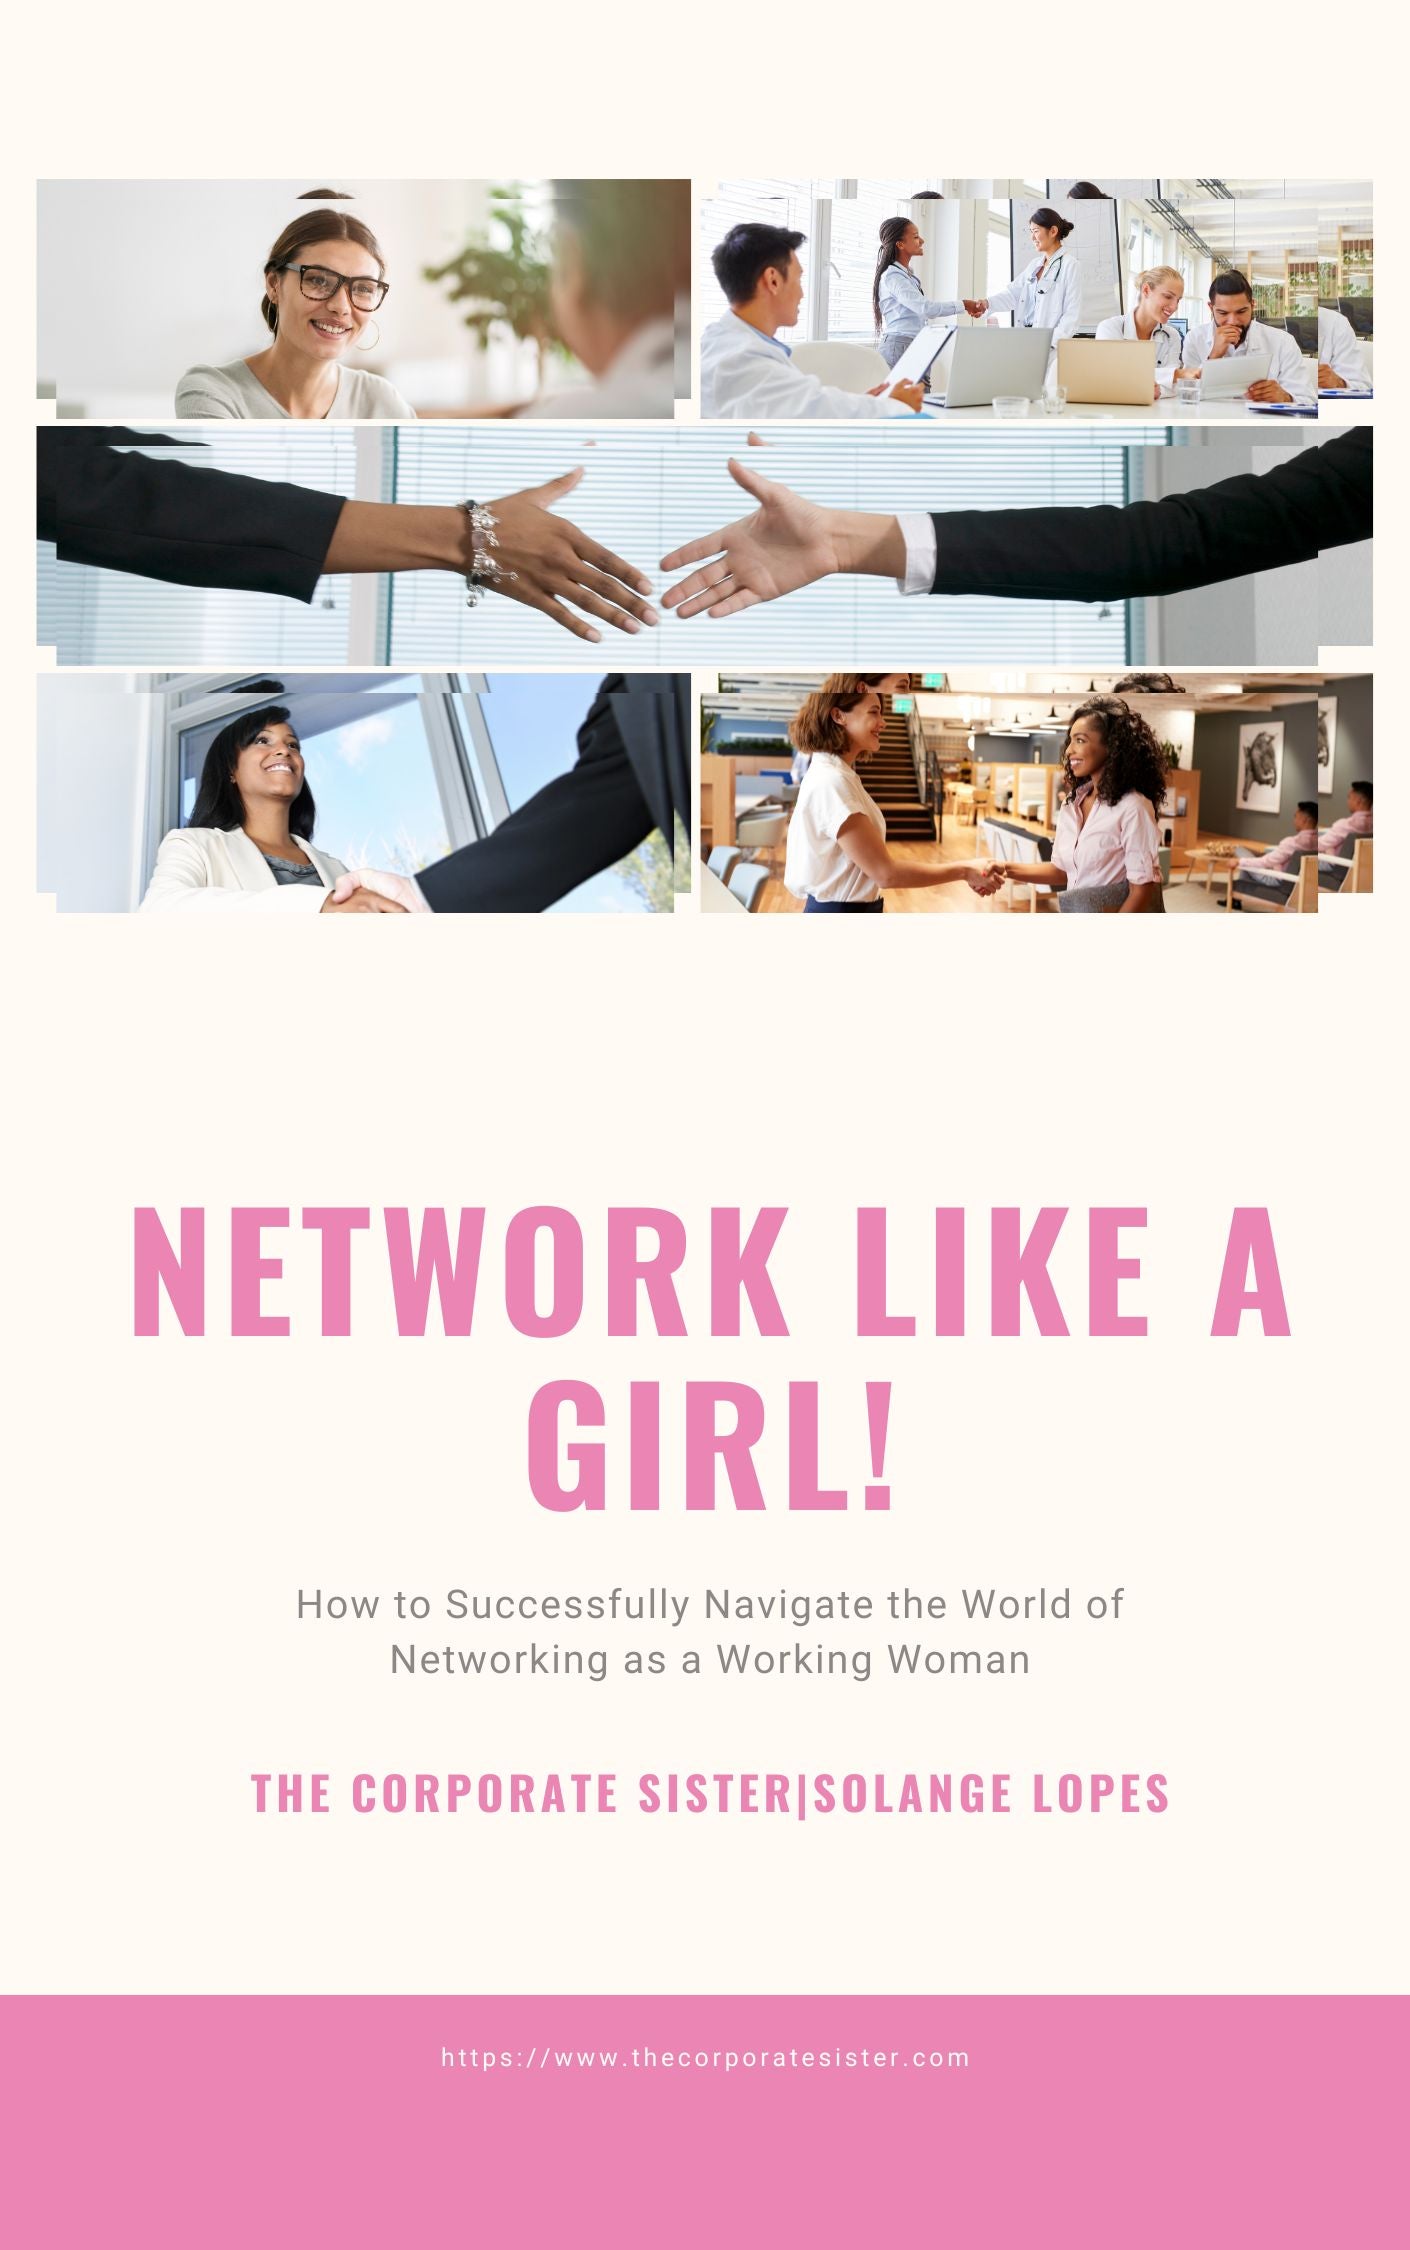 Network like a girl!